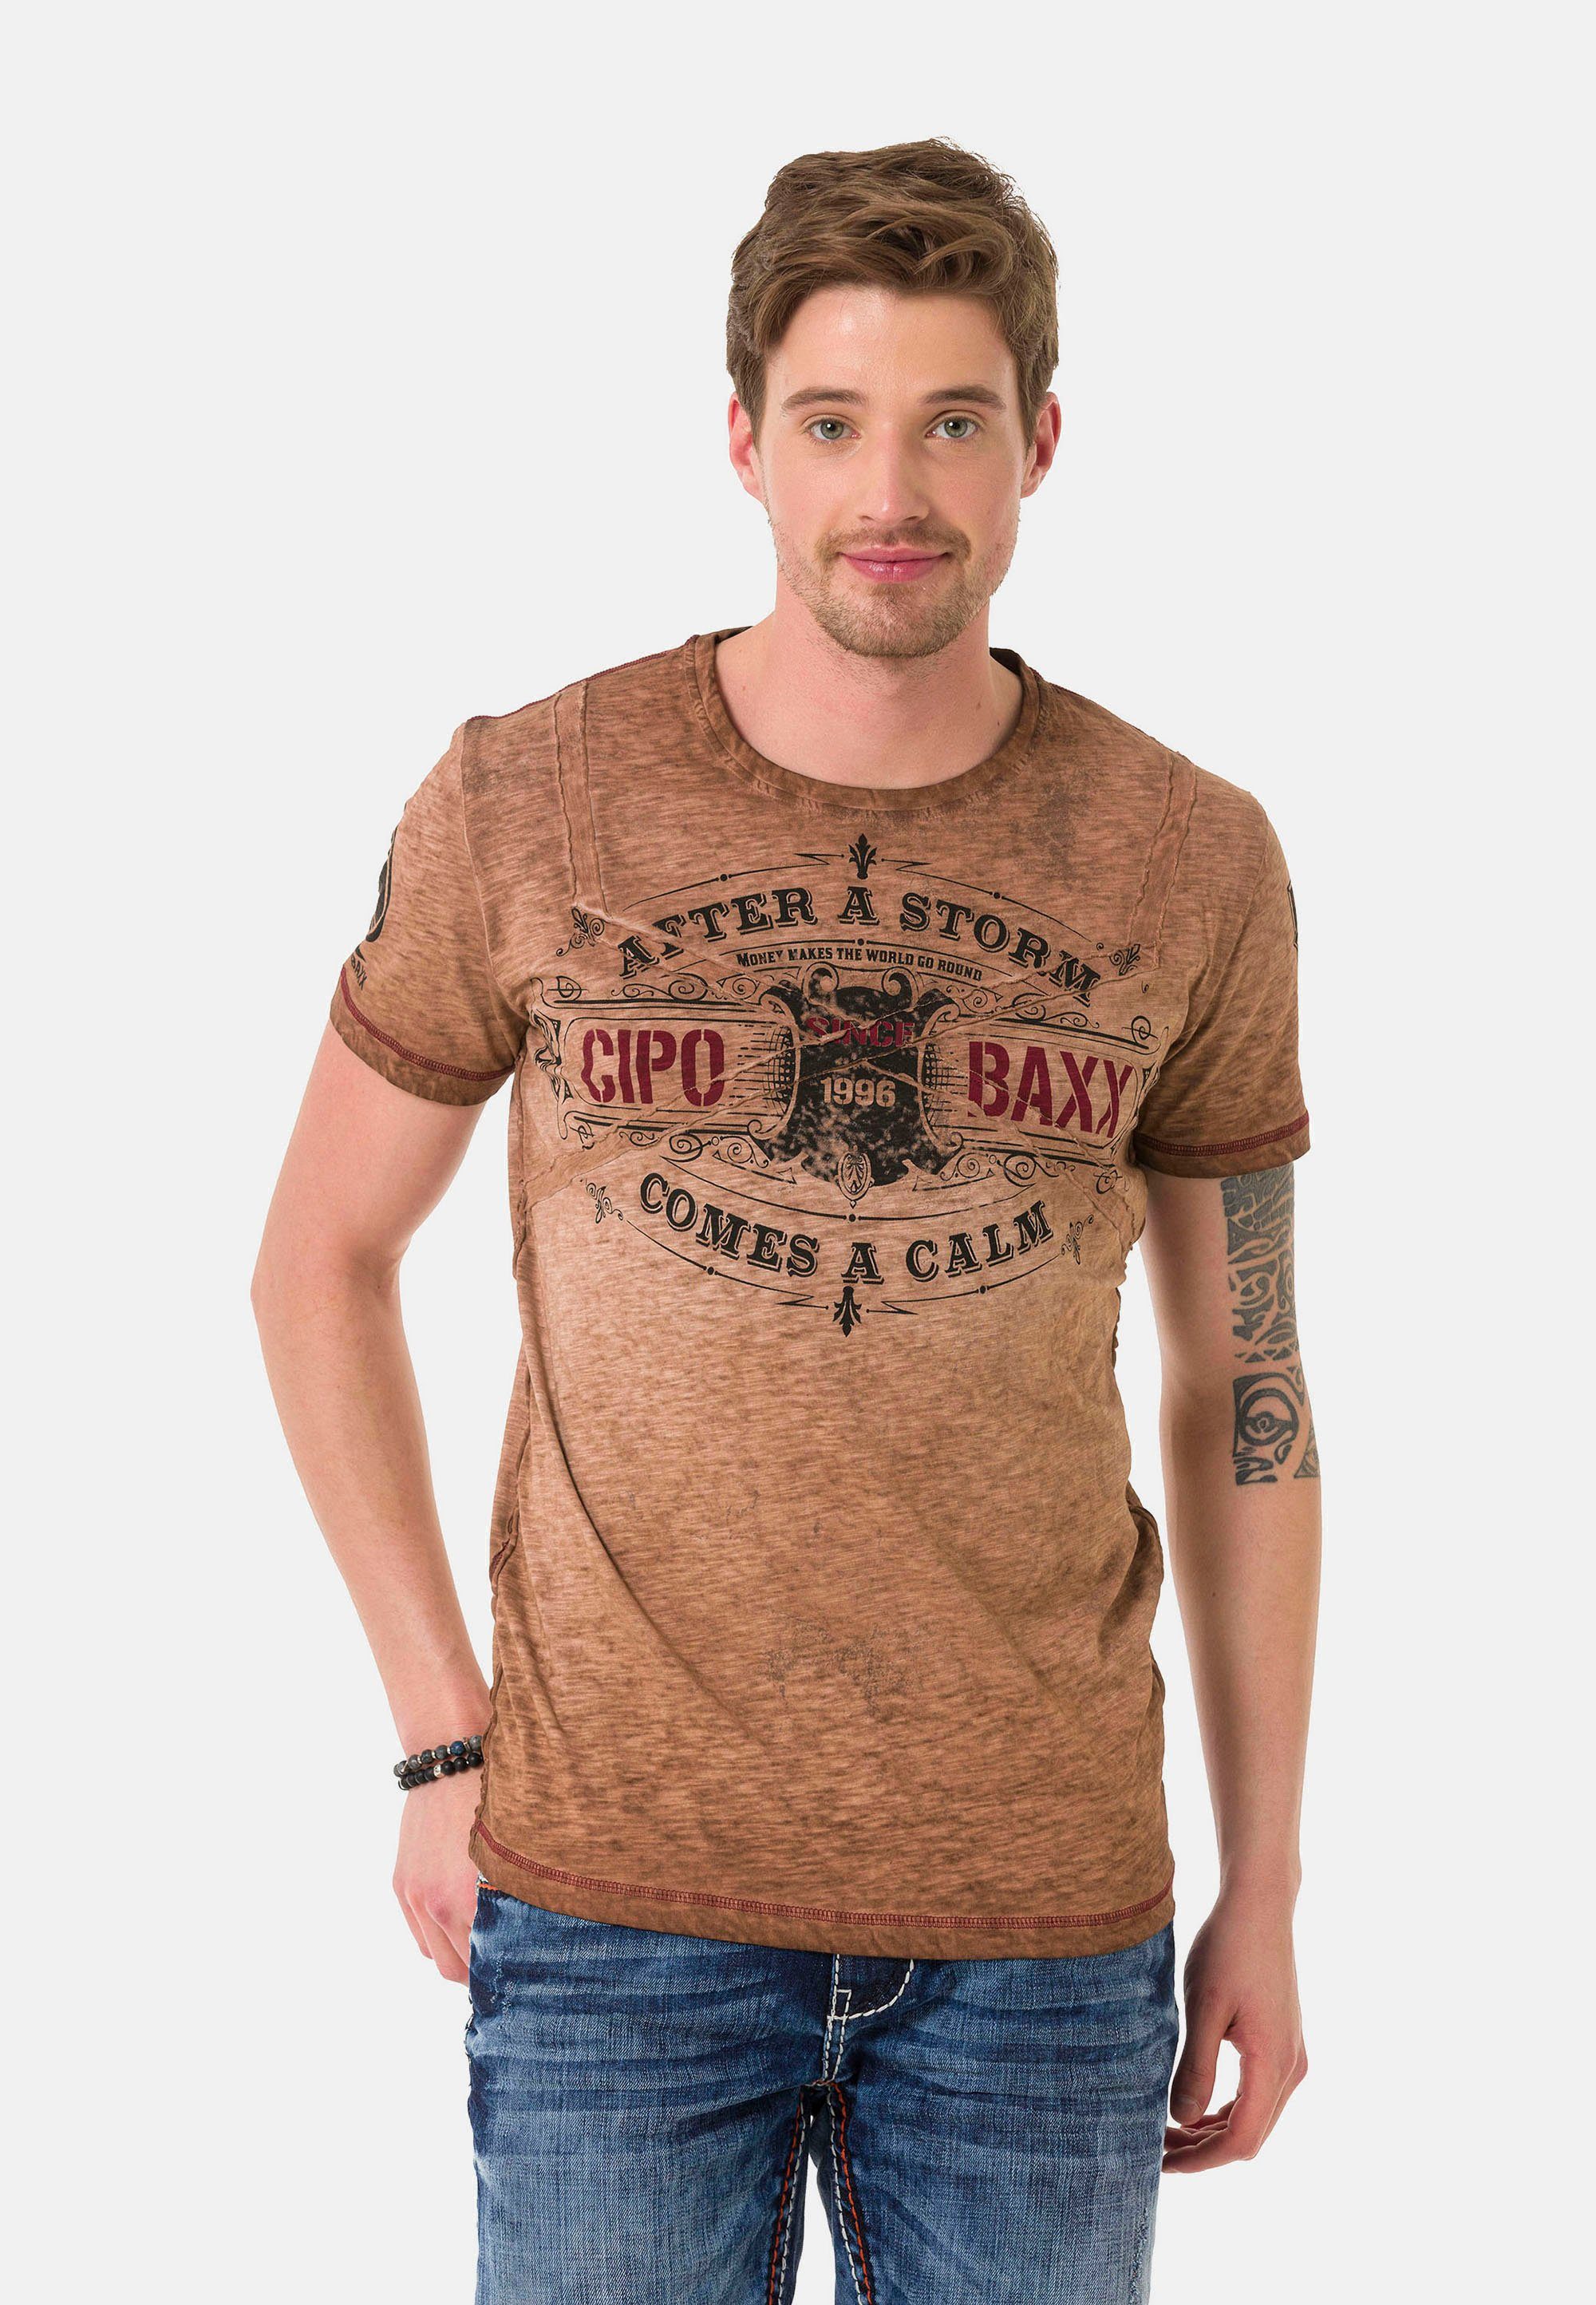 VintageLook Baxx braun & Cipo im T-Shirt